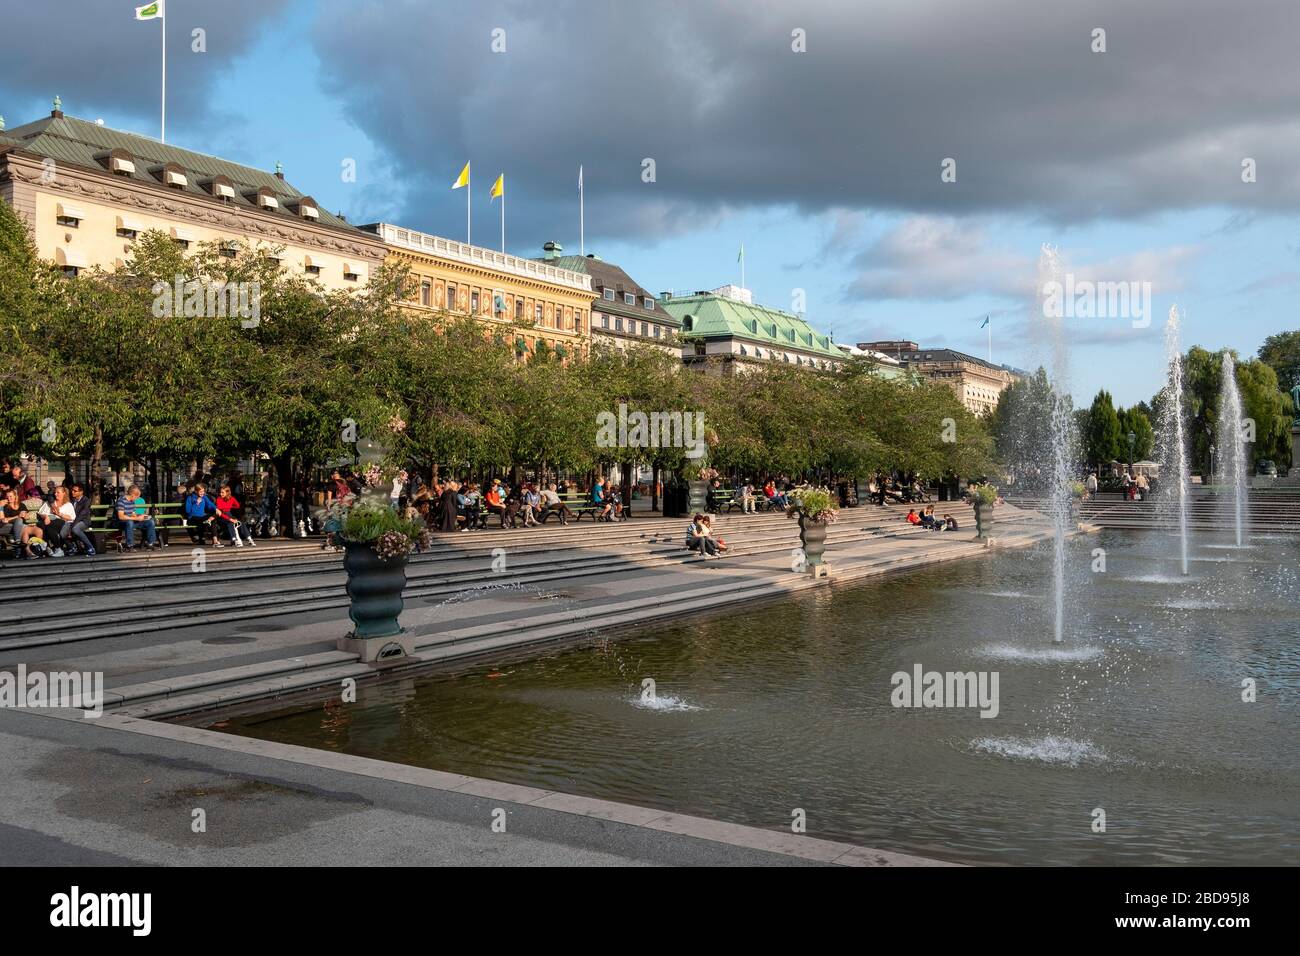 La place du jardin du roi, alias Kungsträdgården à Stockholm, Suède, Europe Banque D'Images